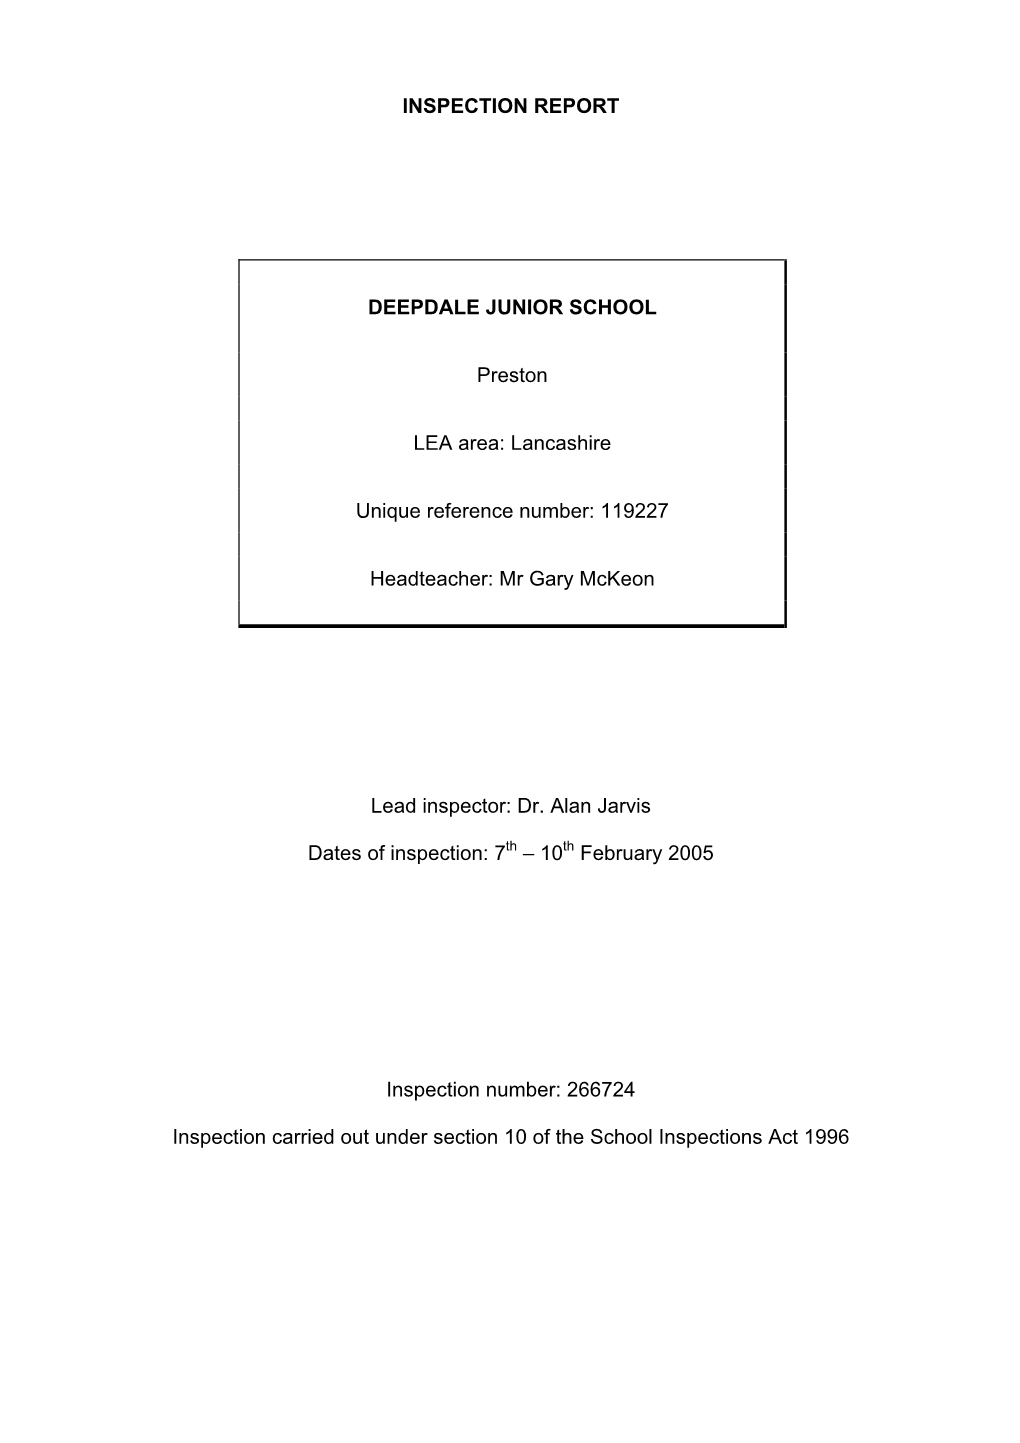 INSPECTION REPORT DEEPDALE JUNIOR SCHOOL Preston LEA Area